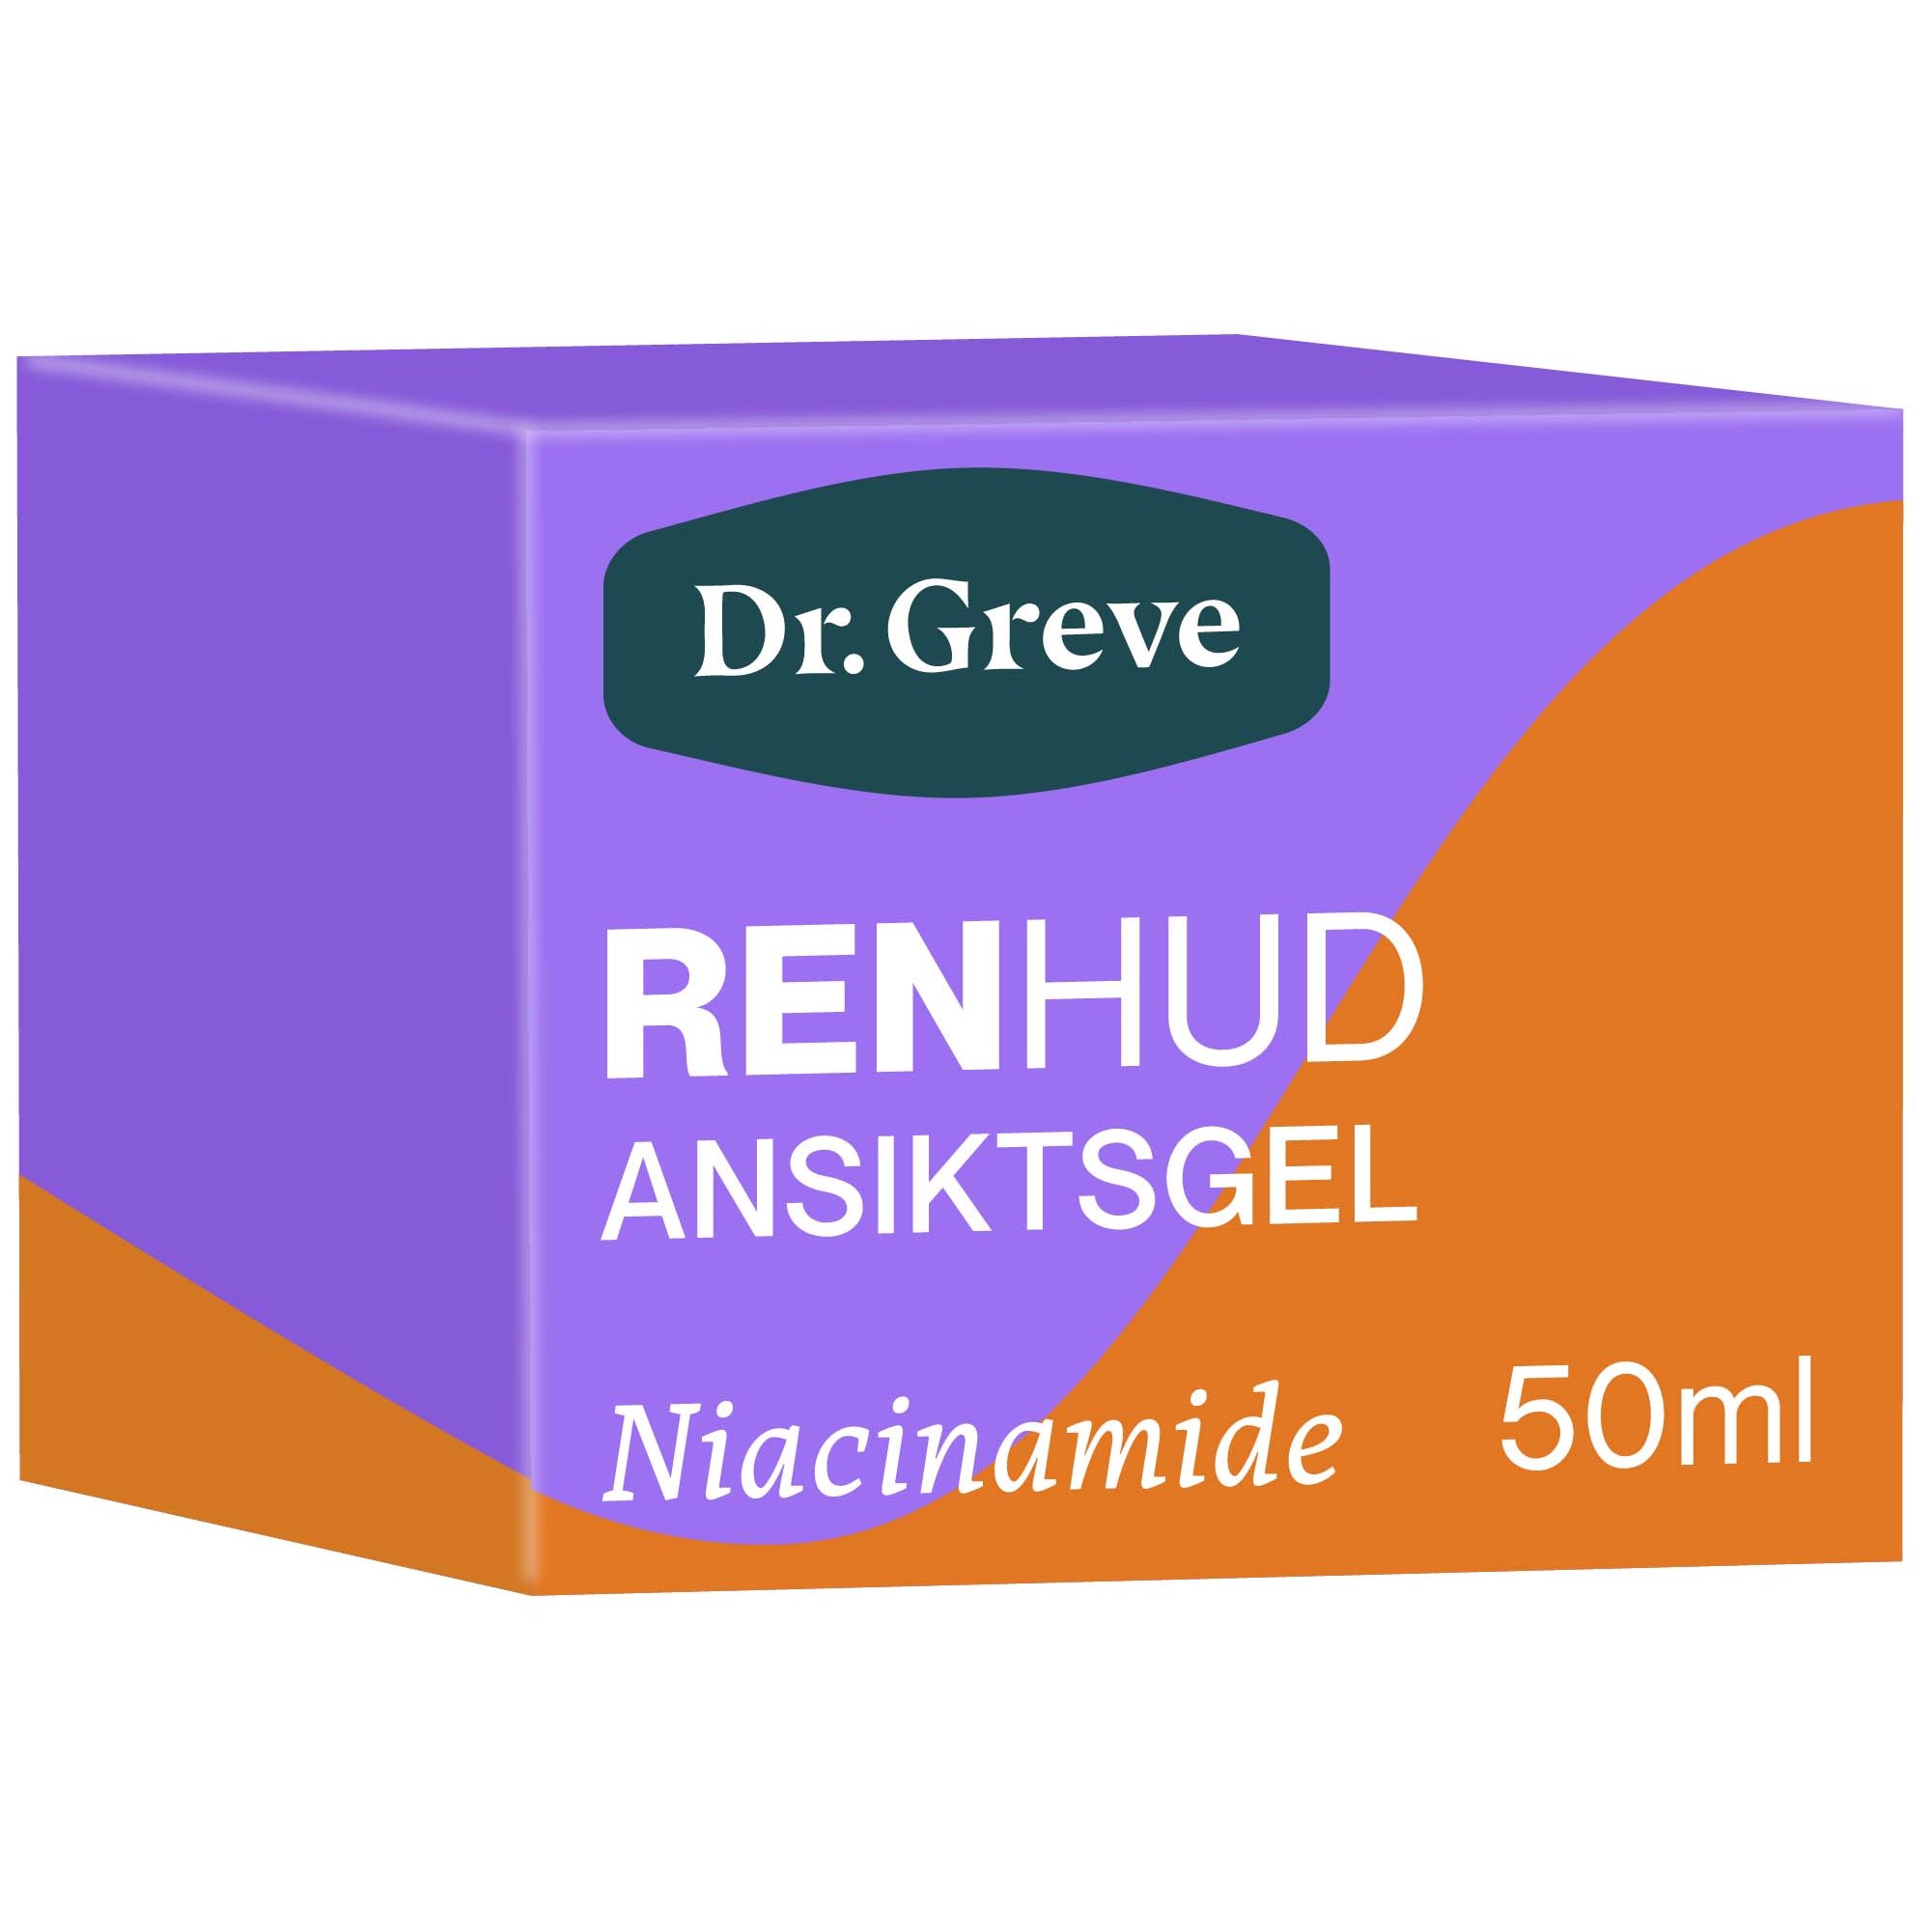 Dr. Greve RENHUD Ansiktsgel 50 ml